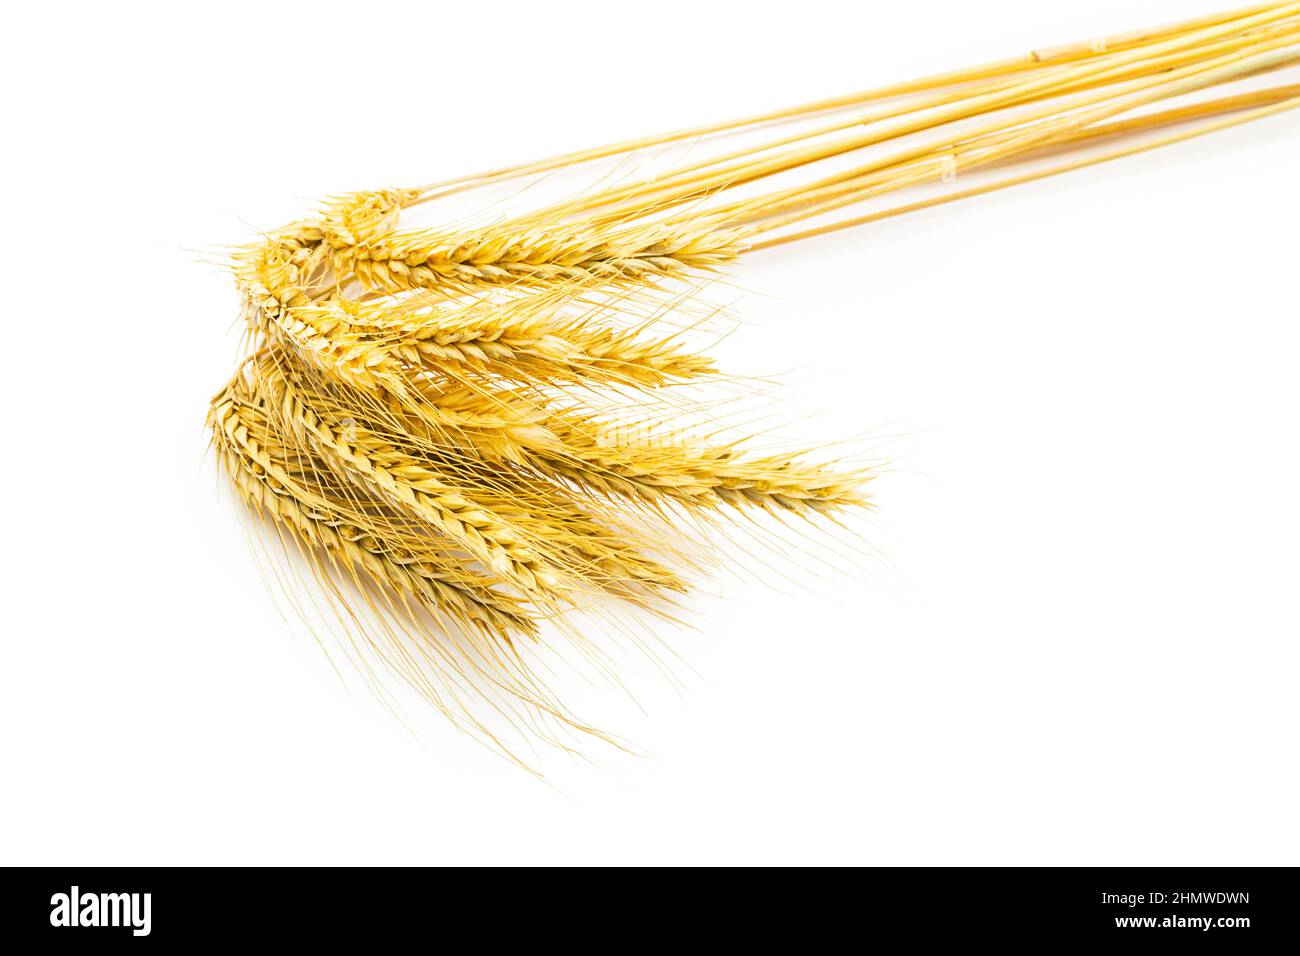 Ein bund Weizenähren isoliert auf weissem Hintergrund. Erstellt im Studio mit einer 5D mark III. Stock Photo